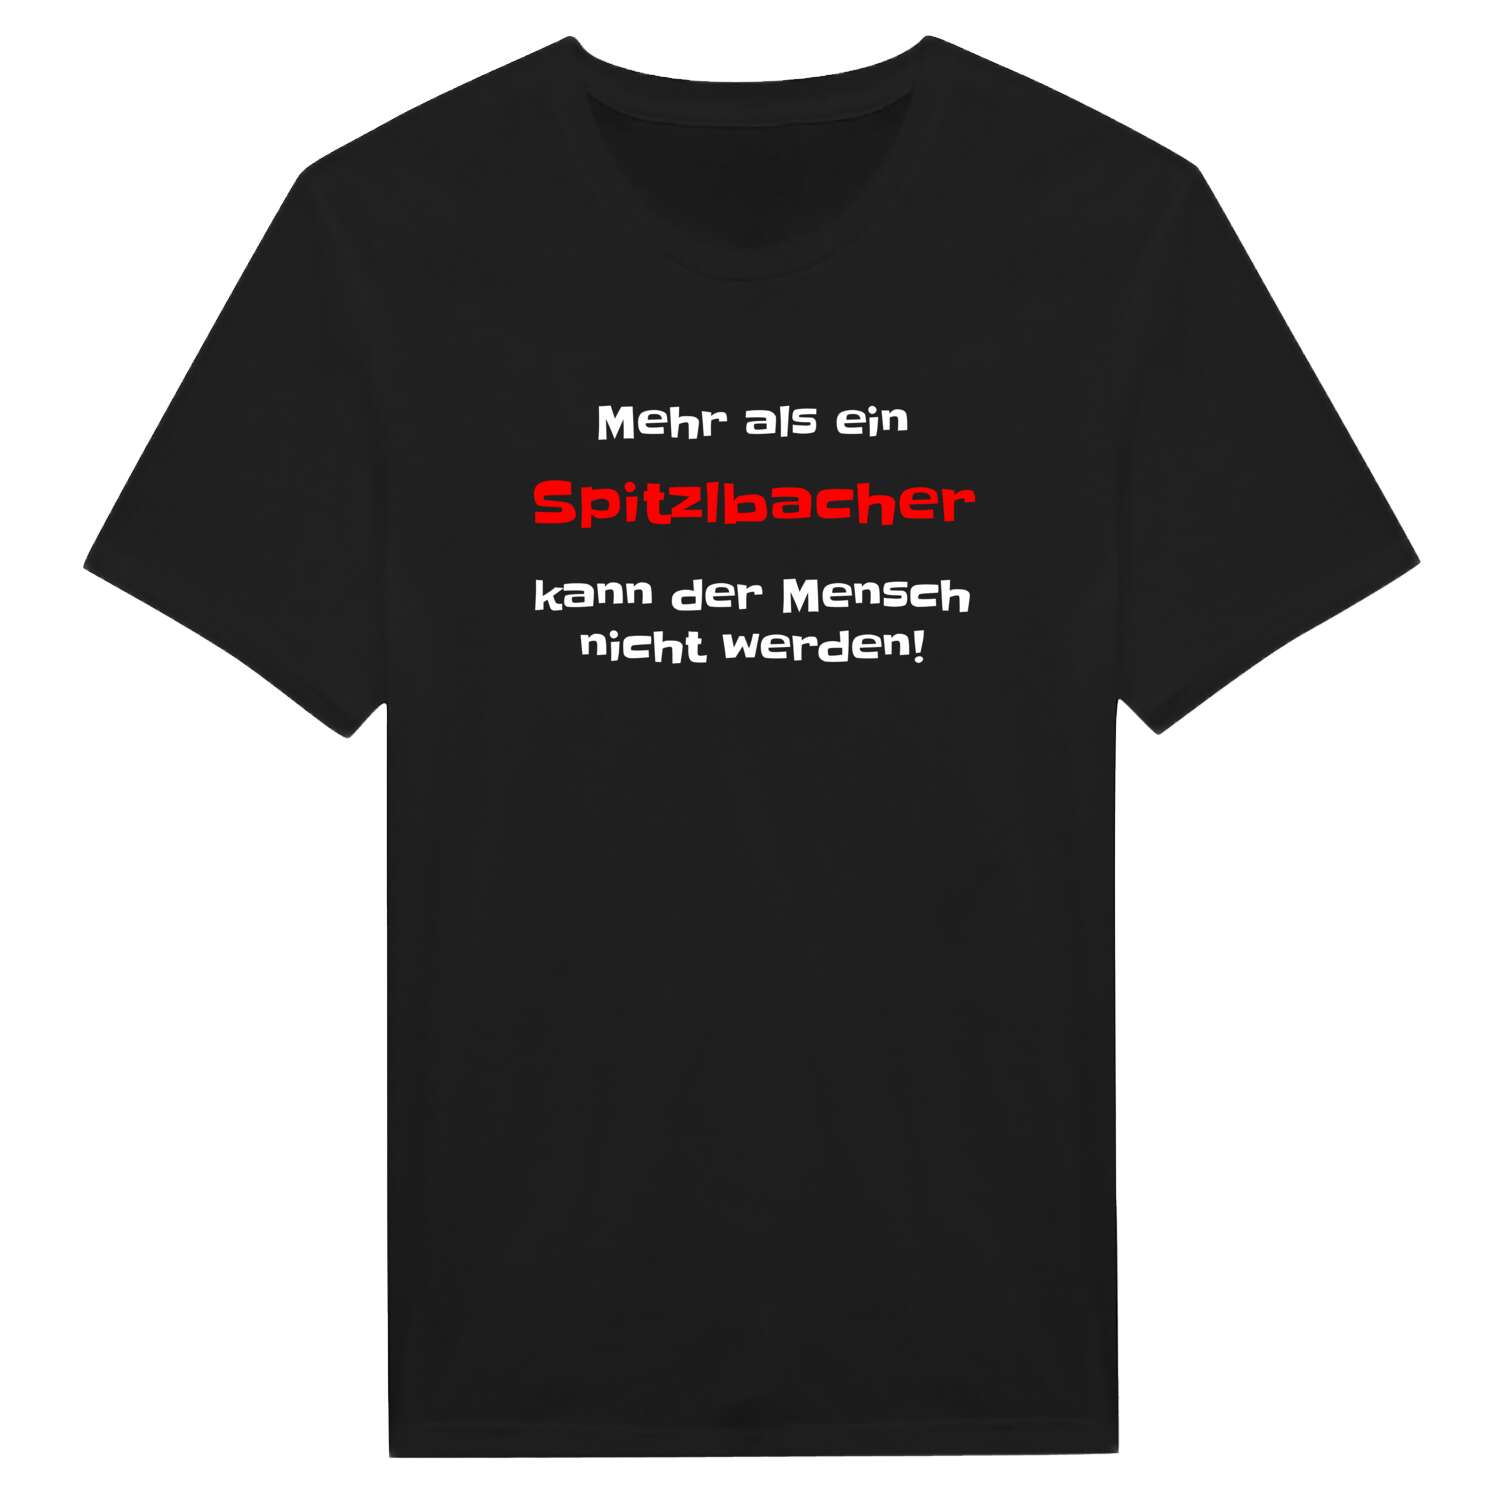 Spitzlbach T-Shirt »Mehr als ein«